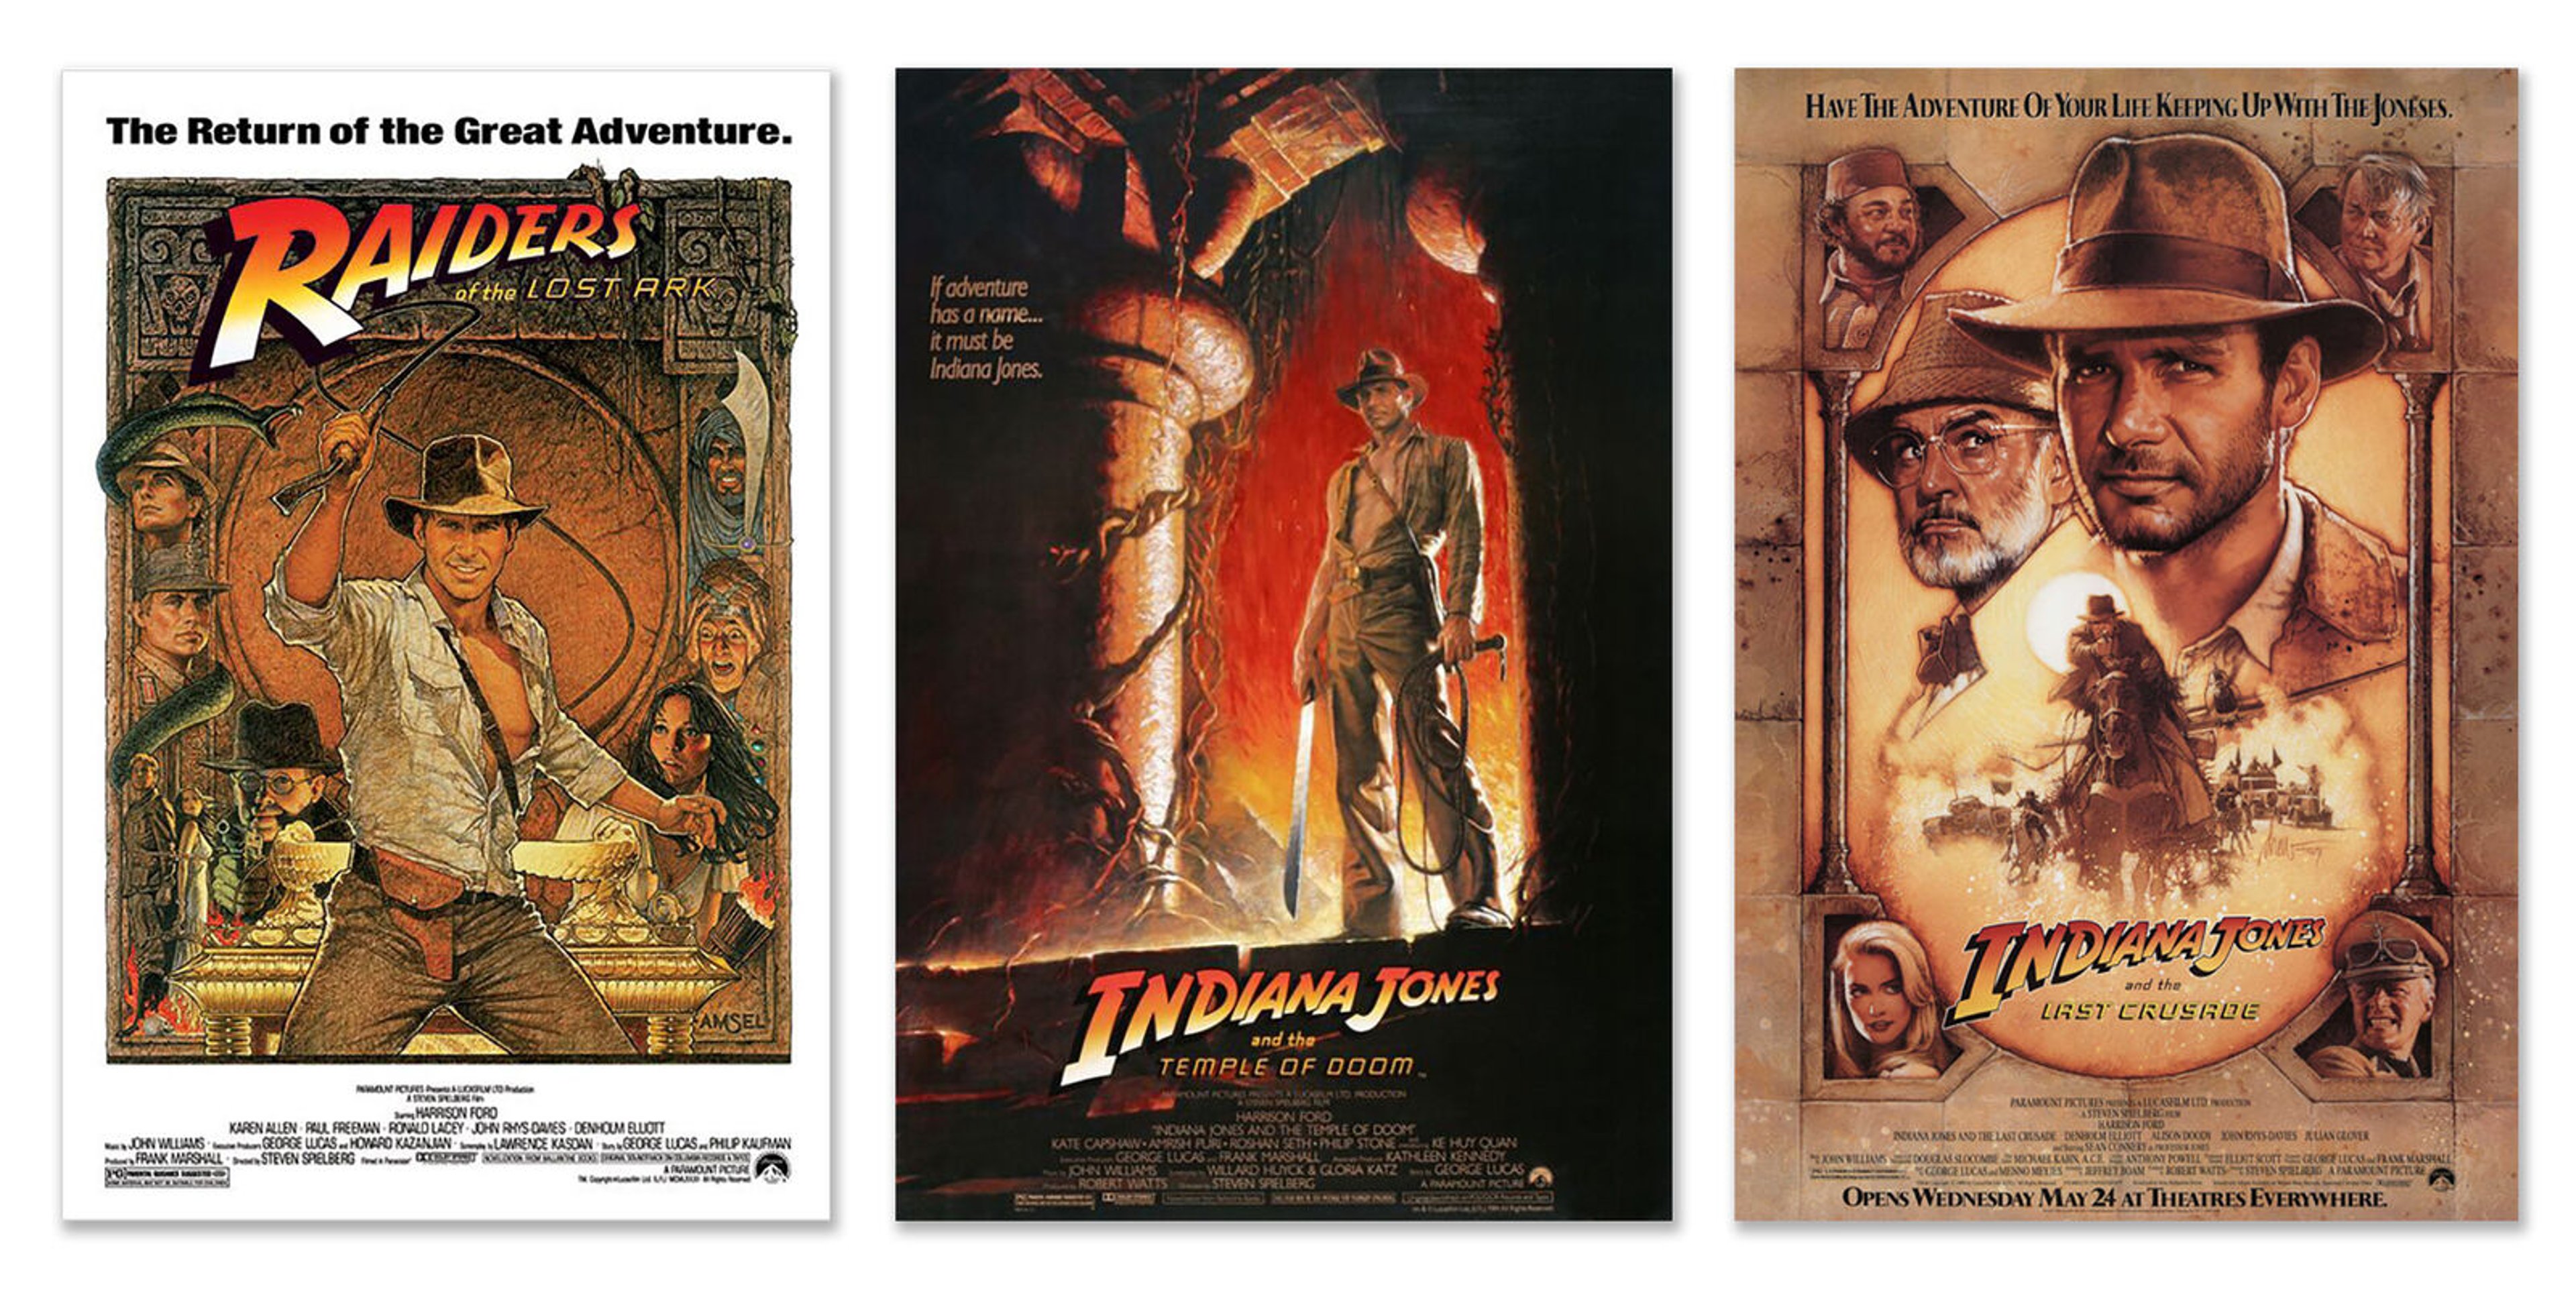 Indiana Jones: i 3 migliori film della saga